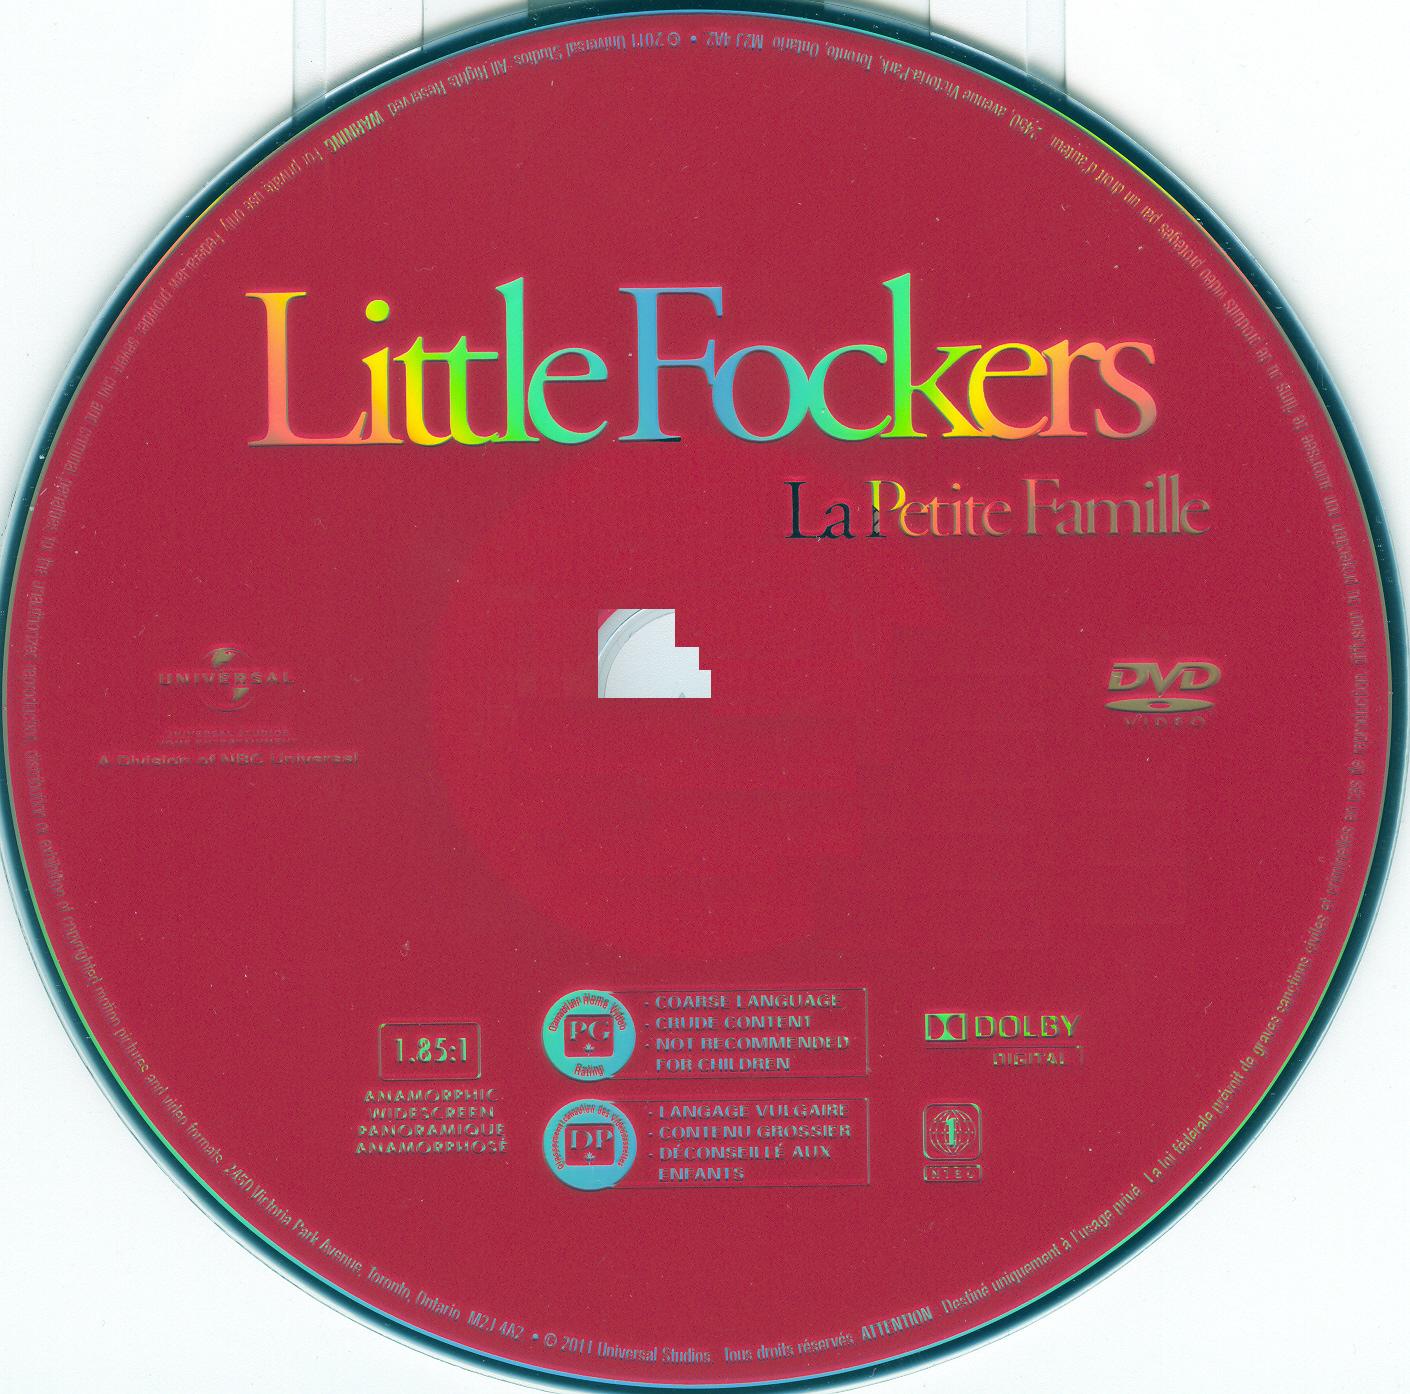 La petite famille - Little Fockers (Canadienne)